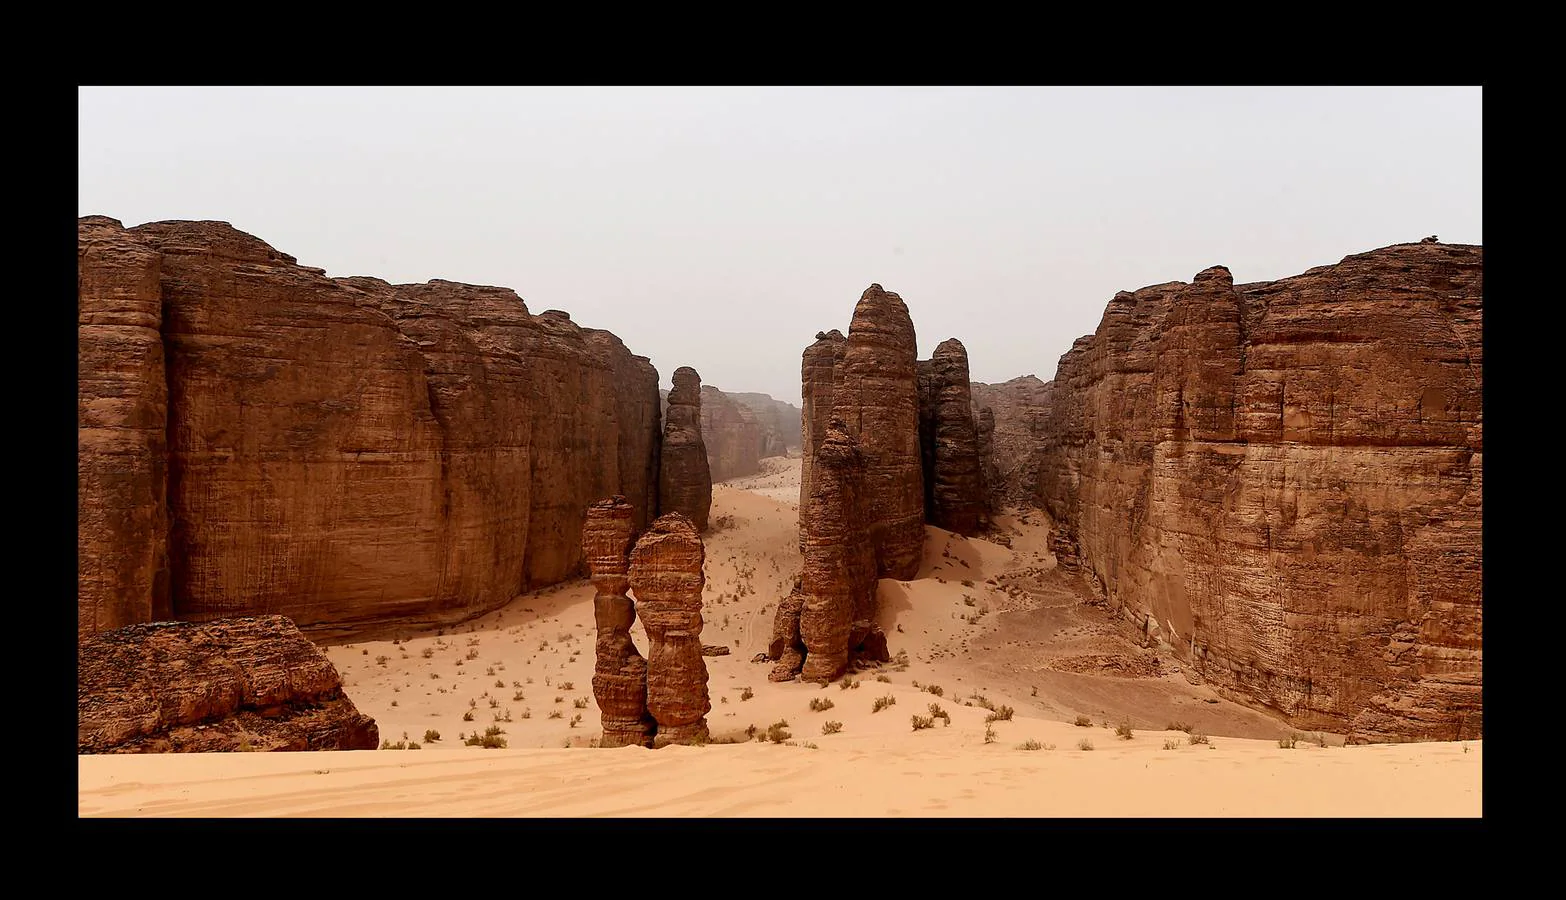 Madain Saleh es un conjunto de restos arqueológicos tallados en roca arenisca, considerados los segundos más importantes de la cultura nabatea después de Petra. Emplazados cerca de la ciudad de Al-Hula, al noroeste de Arabia Saudí, emergen en el desierto como gigantescas rocas labradas en forma de palacios, templos y grandes tumbas de hasta 16 metros de altura. Al-Ula, un área poco conocida, rica en vestigios de este tipo, que fue alguna vez encrucijada de civilizaciones, es vista como una joya turística en Arabia Saudí, que este año comenzará a emitir visas para turistas por primera vez.